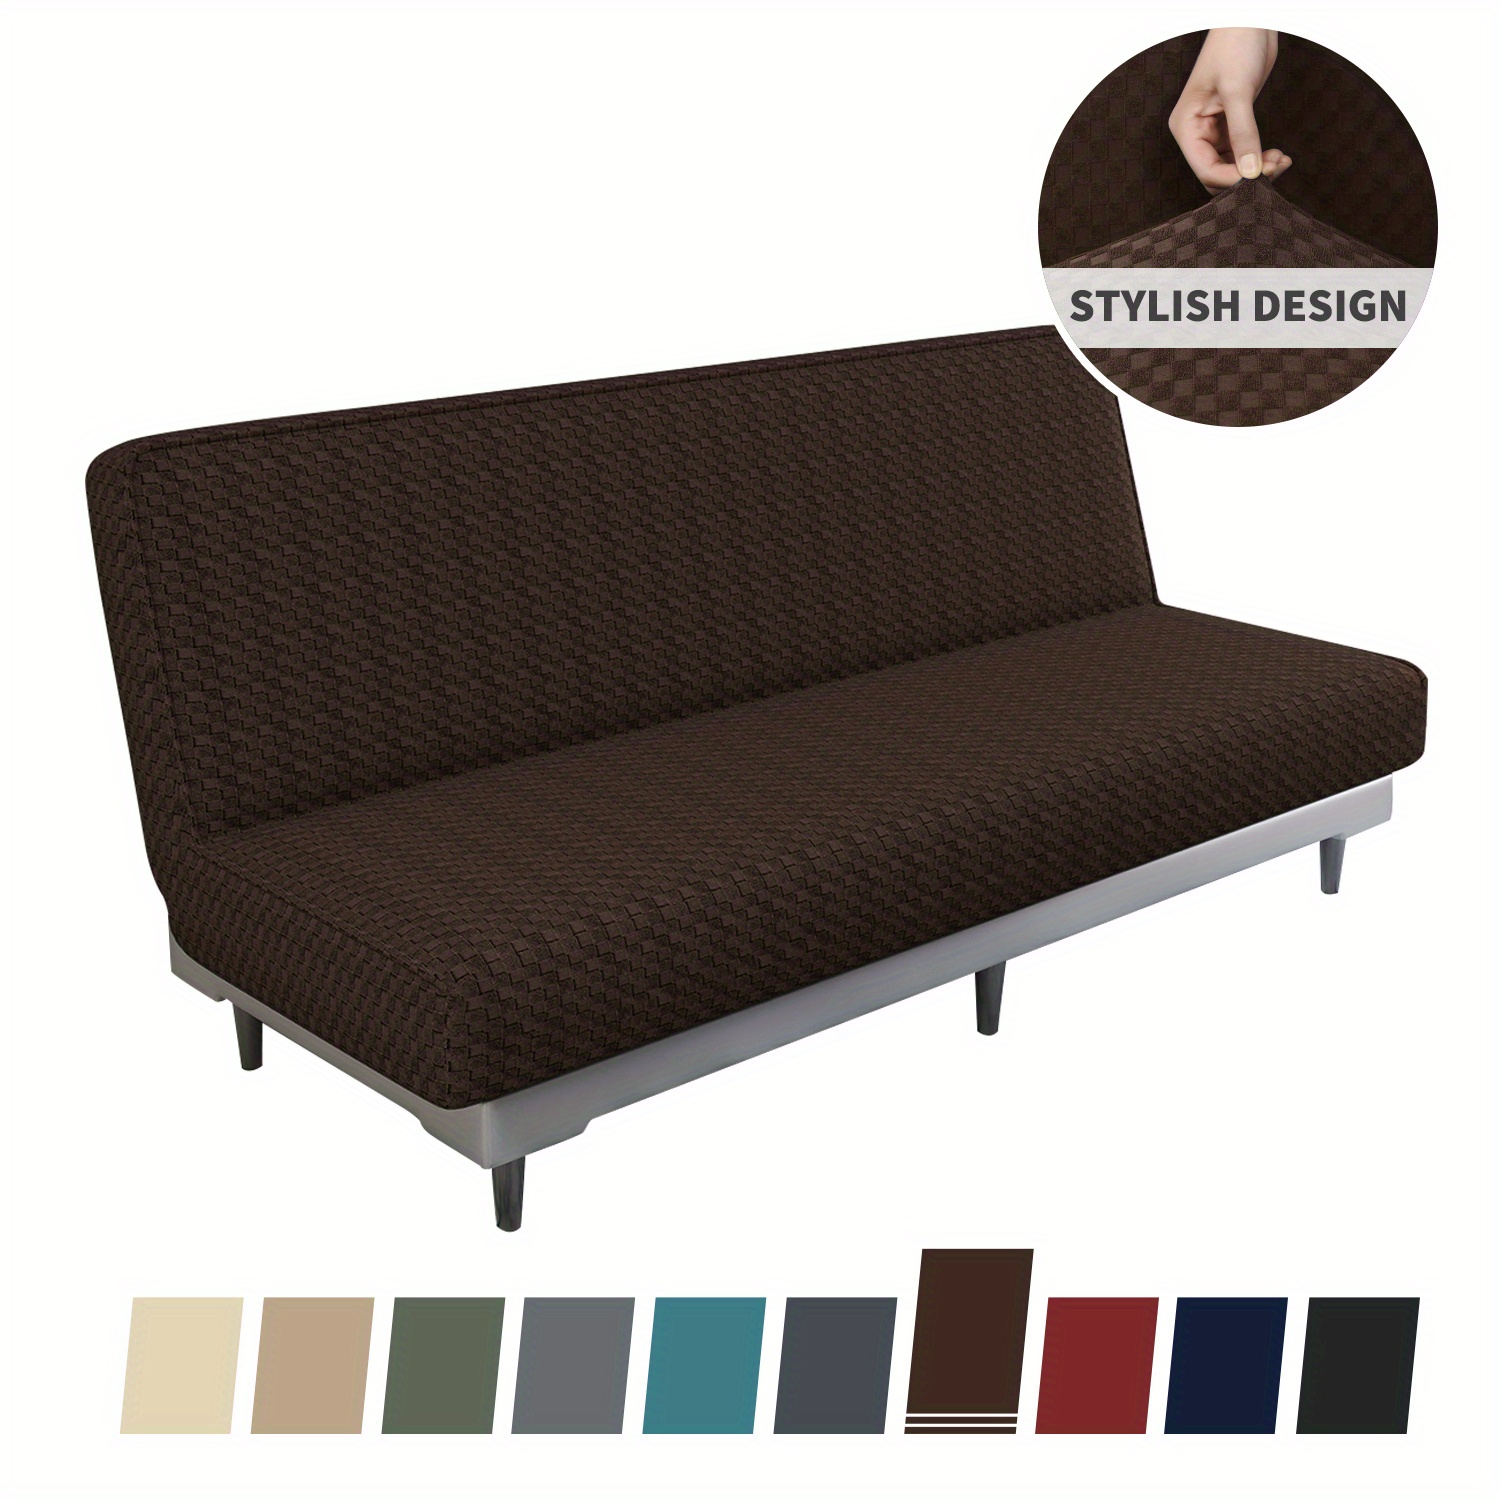 MIFXIN Funda plegable para sofá cama, funda de sofá sin brazos, estampado  geométrico para futón, tela elástica de poliéster, cubierta todo incluido